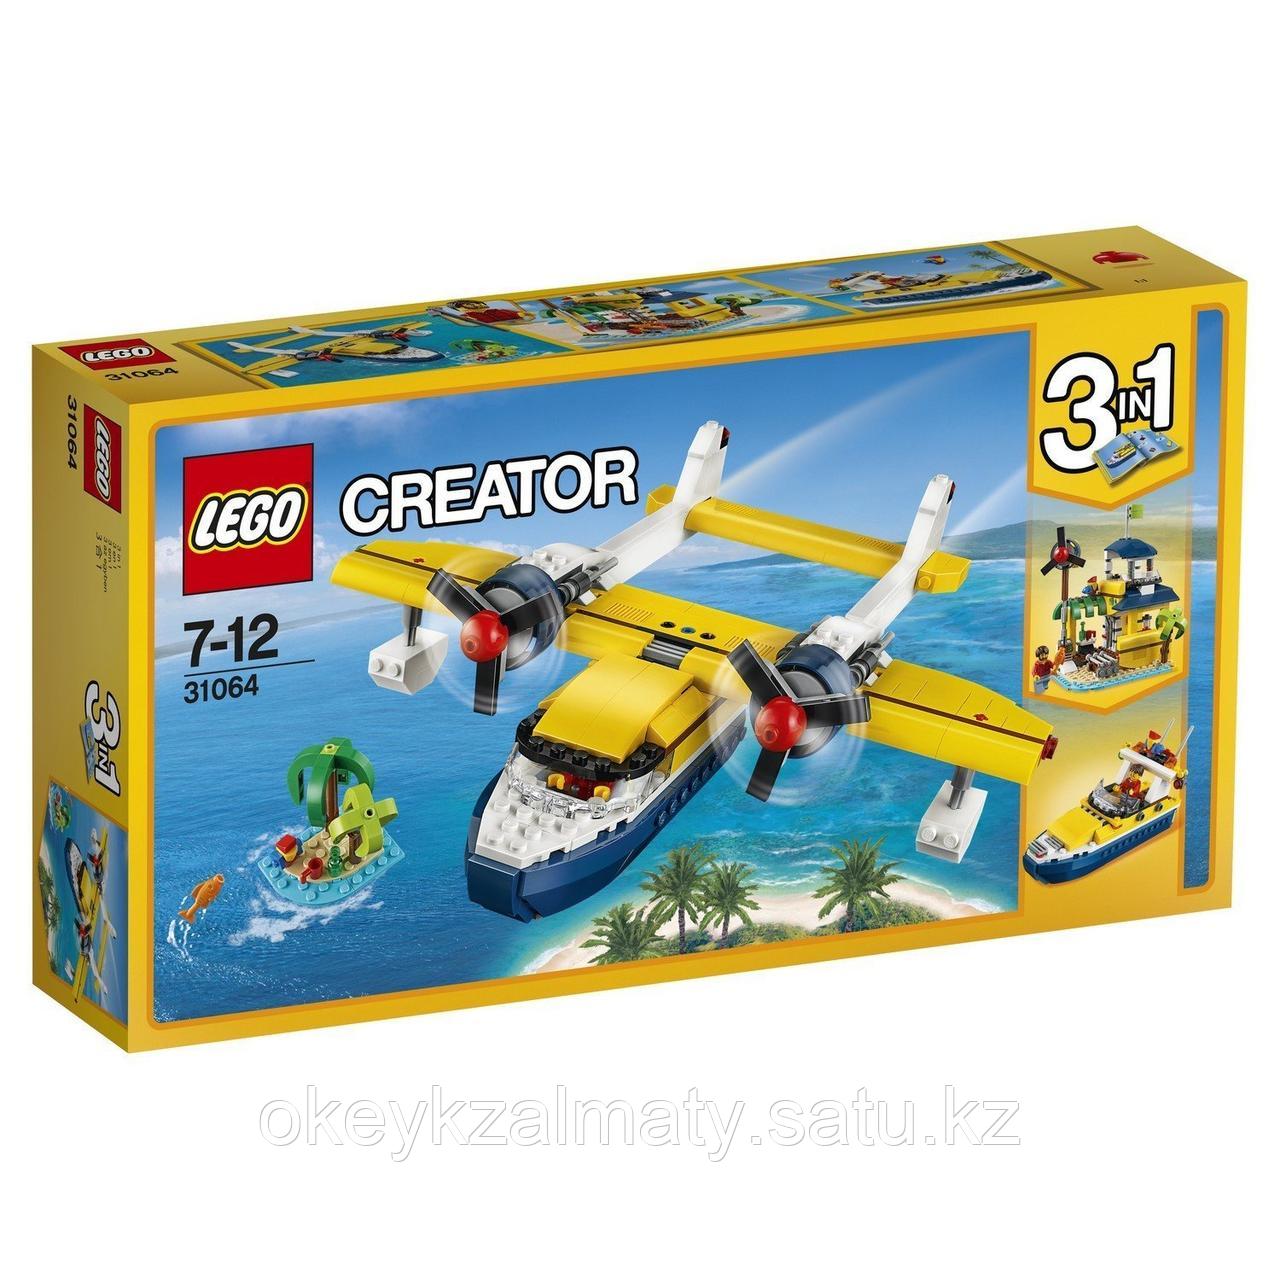 LEGO Creator: Приключения на островах 31064